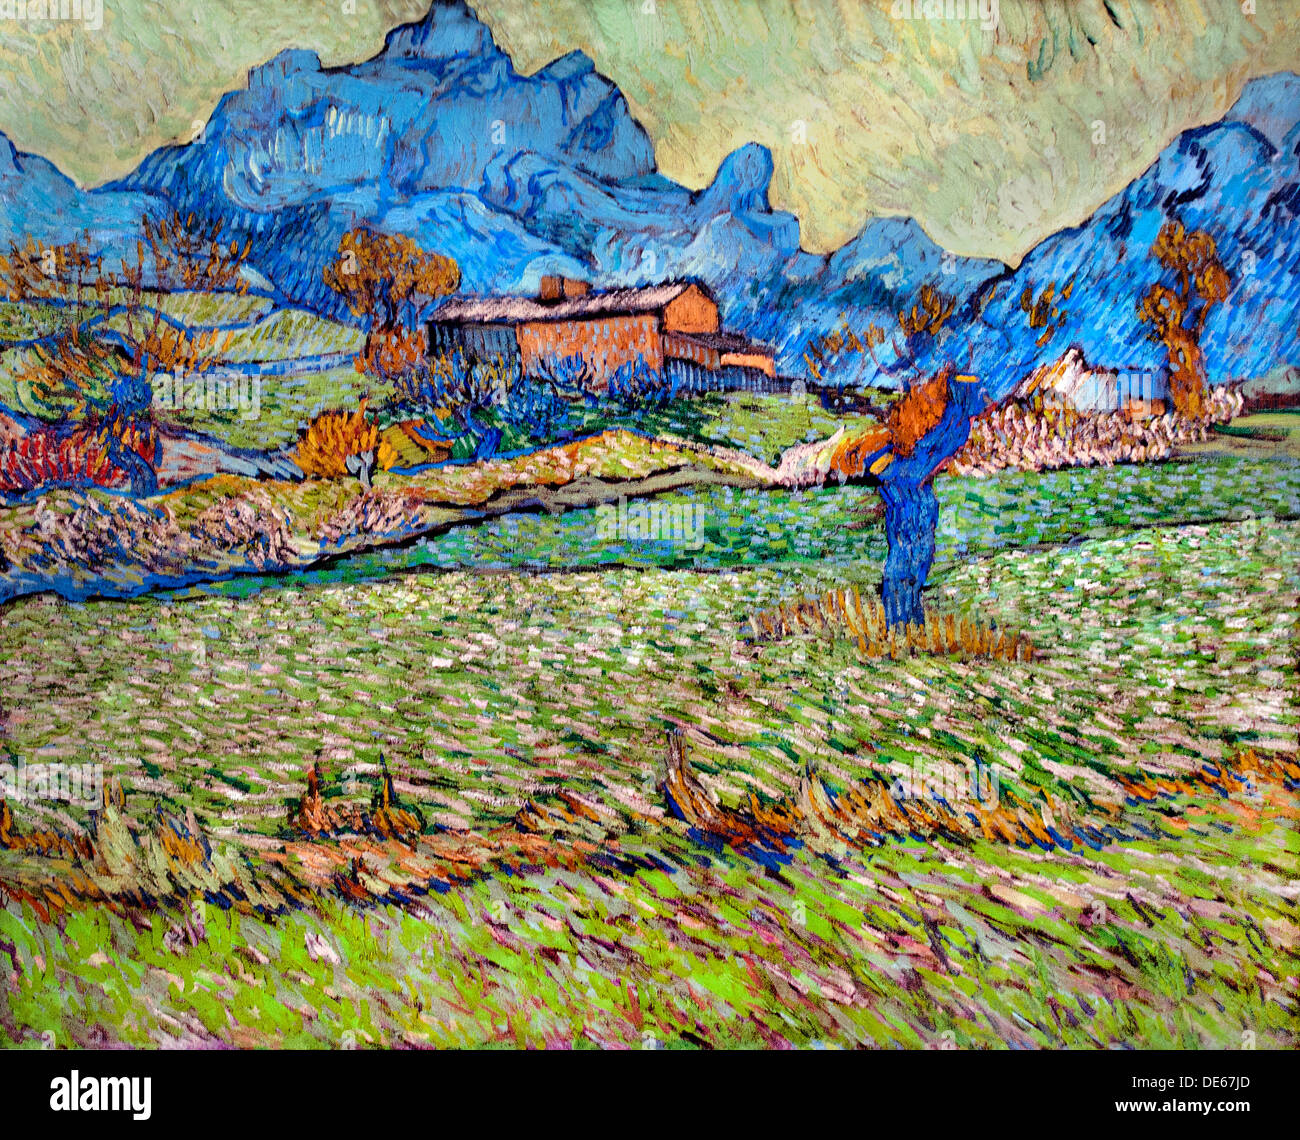 Weizen-Felder in einer bergigen Landschaft Saint Remy 1889 Vincent Van Gogh 1853-1890 Niederlande Niederlande Stockfoto